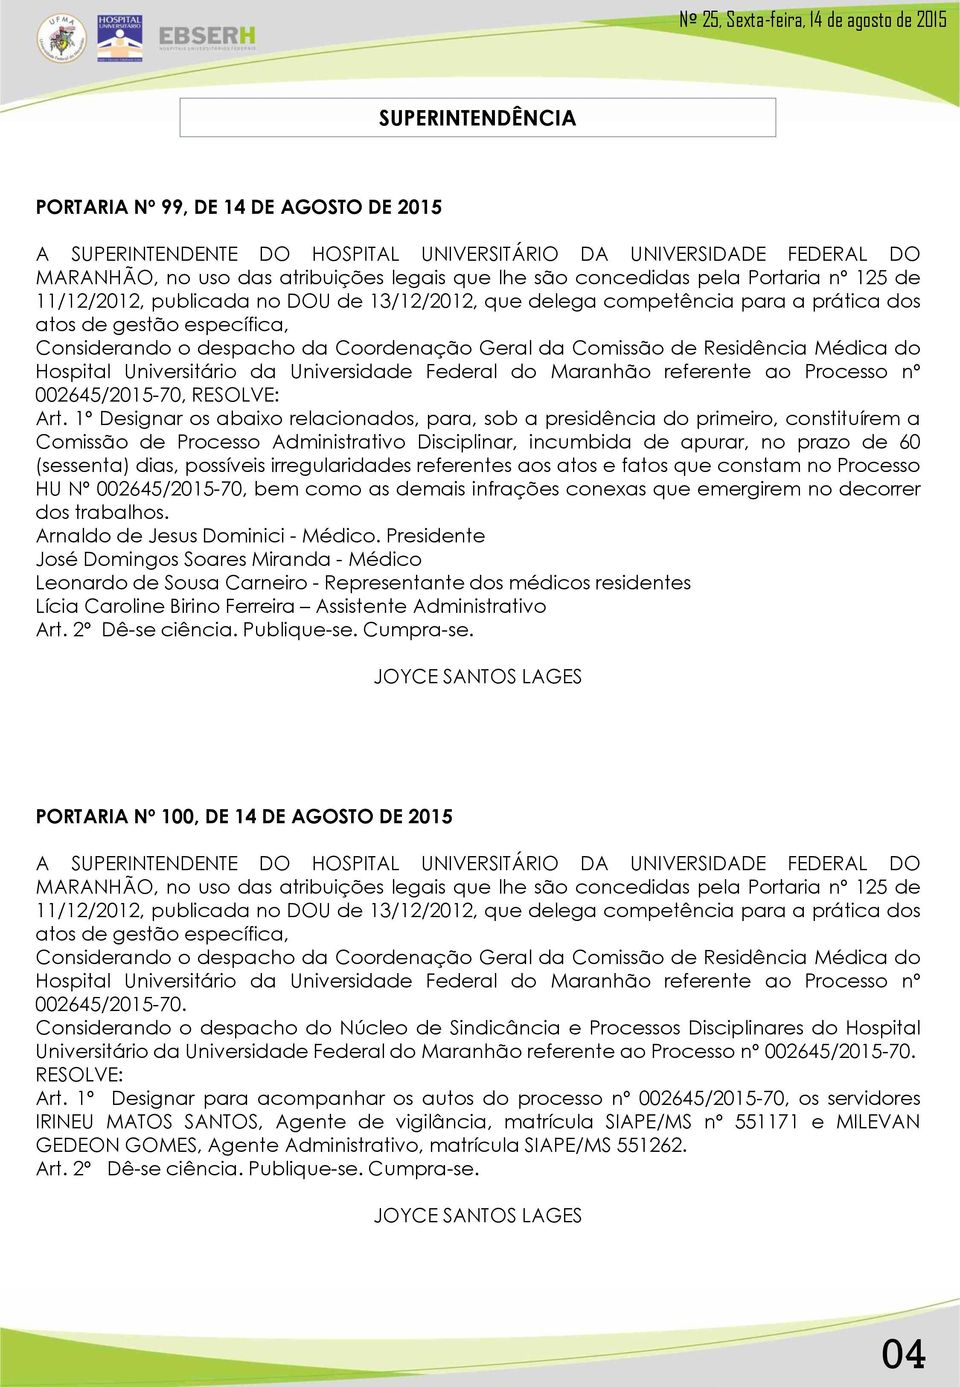 Hospital Universitário da Universidade Federal do Maranhão referente ao Processo nº 002645/2015-70, RESOLVE: Art.